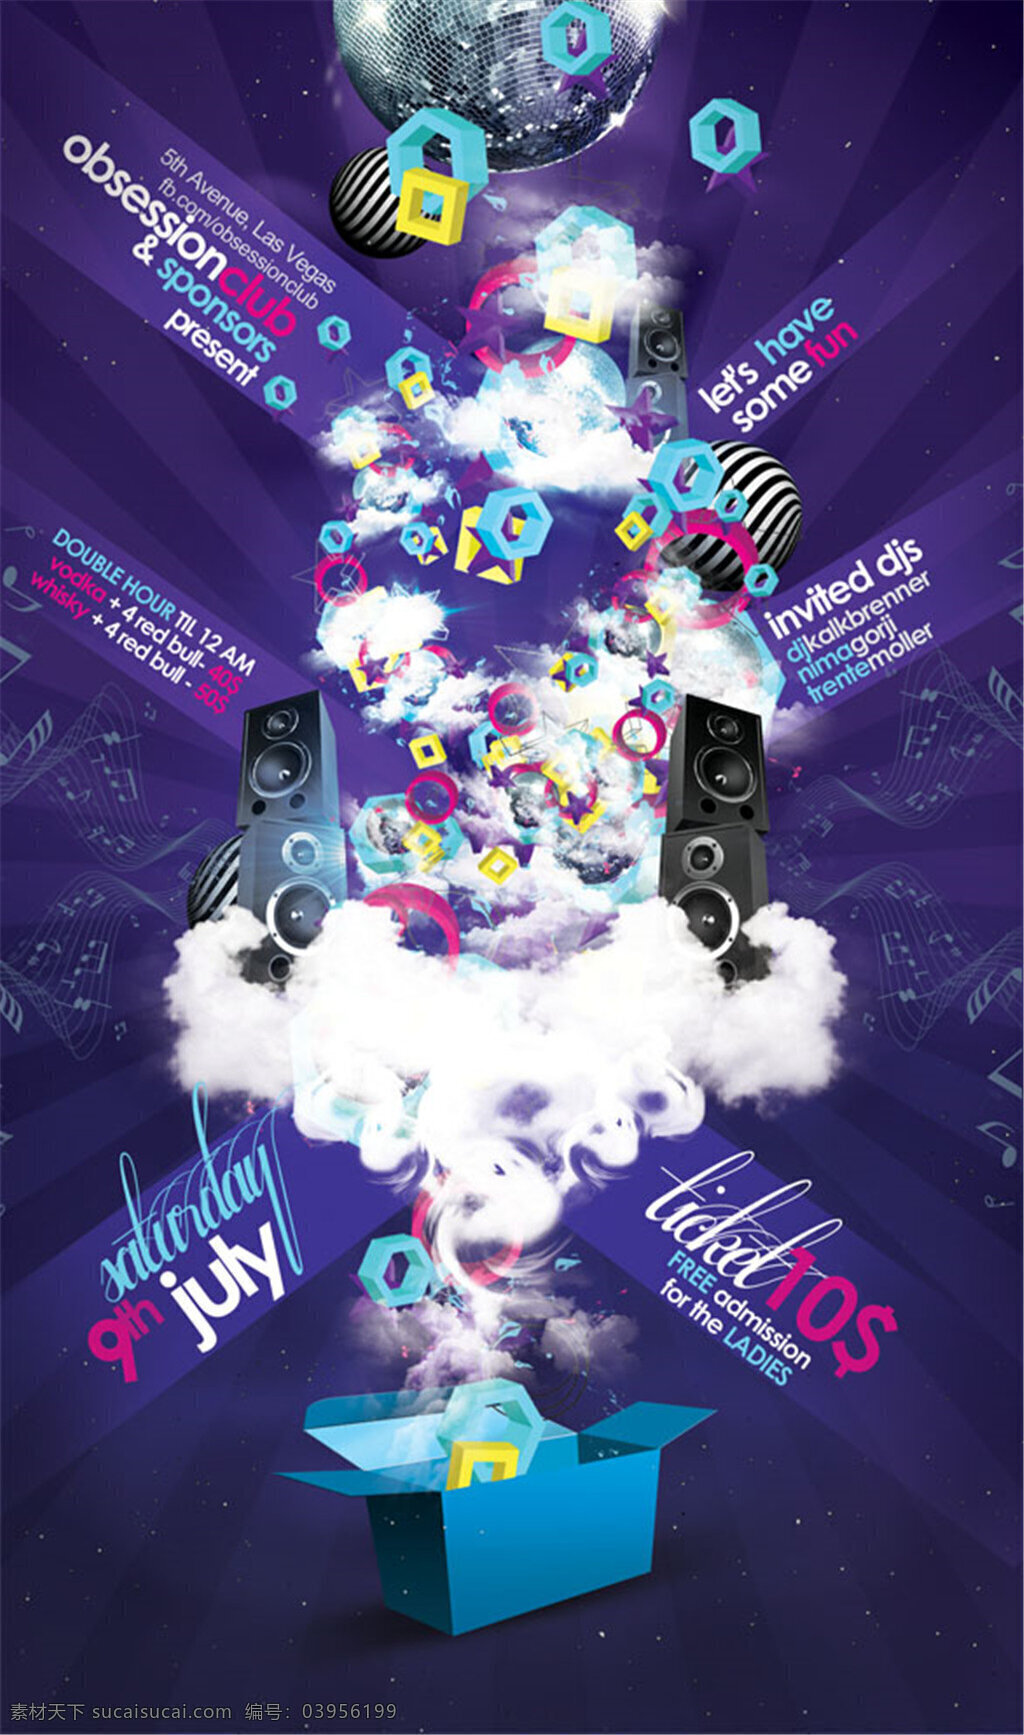 紫色 创意 传单 海报 炫酷 麦克风 音响 晚会 嗨皮 聚会